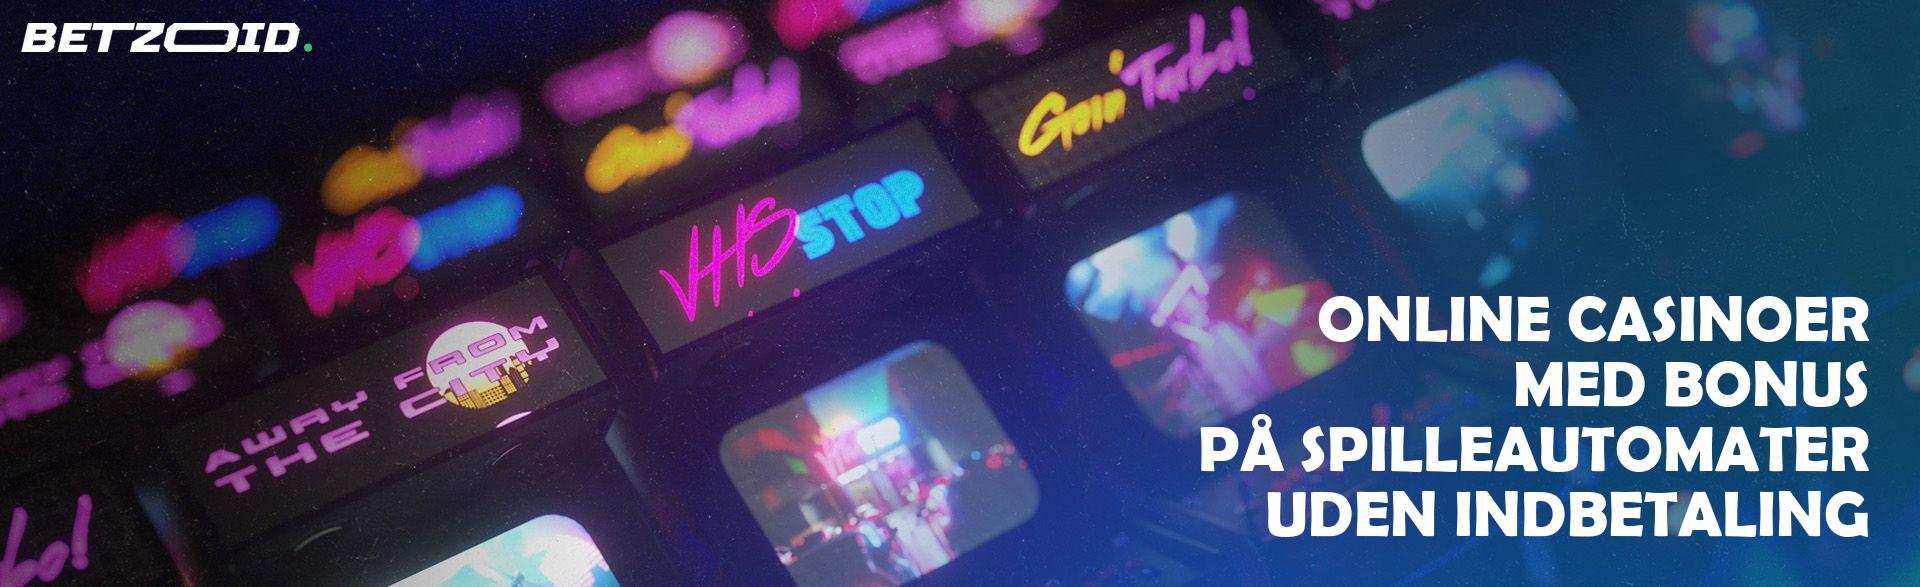 Online Casinoer med Bonus på Spilleautomater uden Indbetaling.